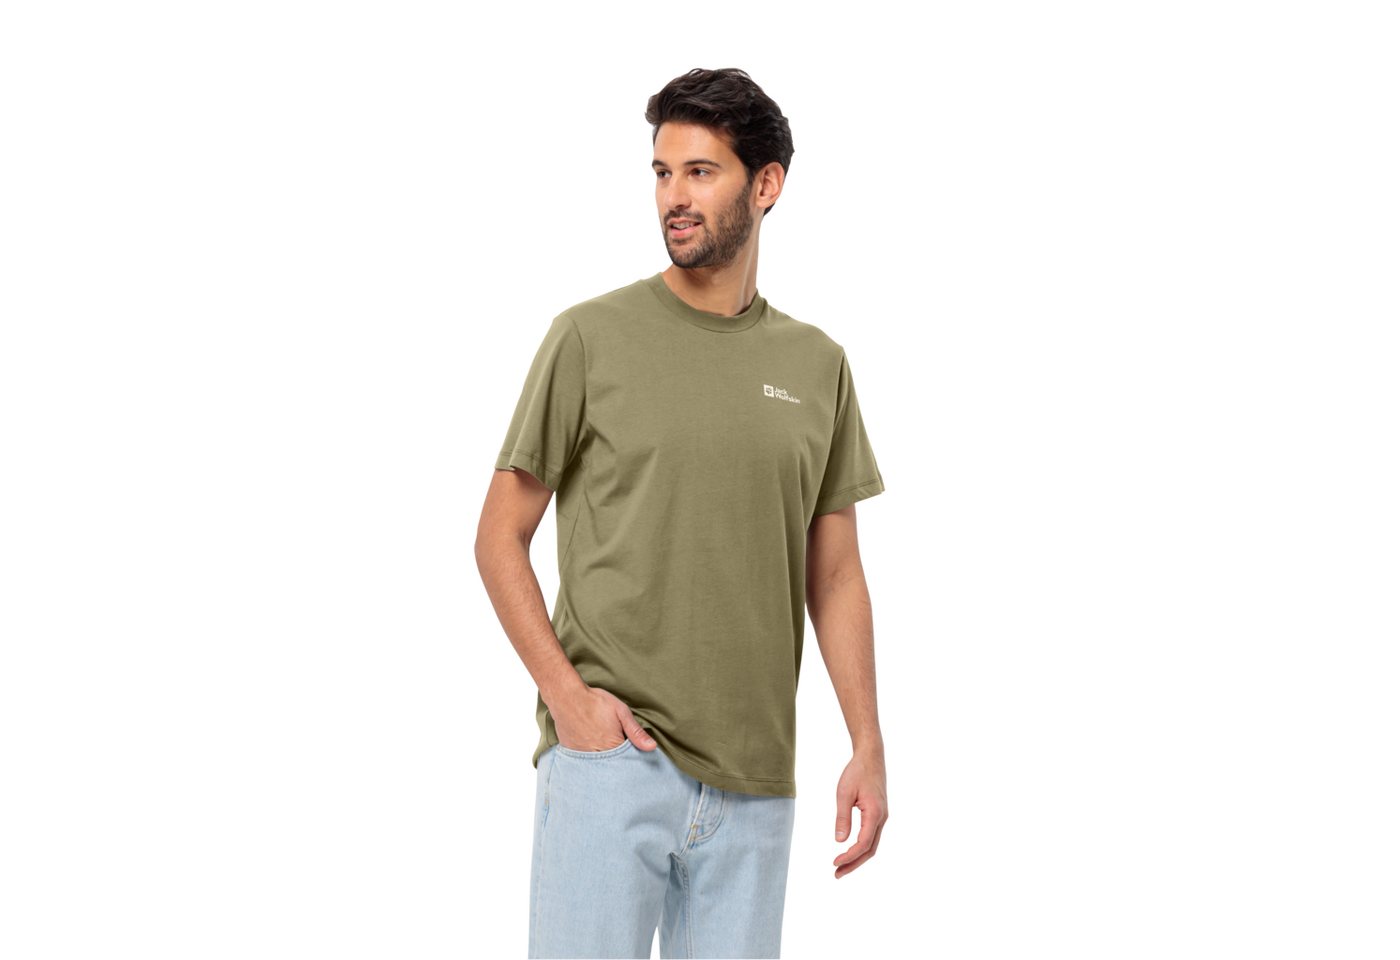 Jack Wolfskin T-Shirt ESSENTIAL T M weiches, klassisches T-Shirt aus atmungsaktiver Bio-Baumwolle von Jack Wolfskin